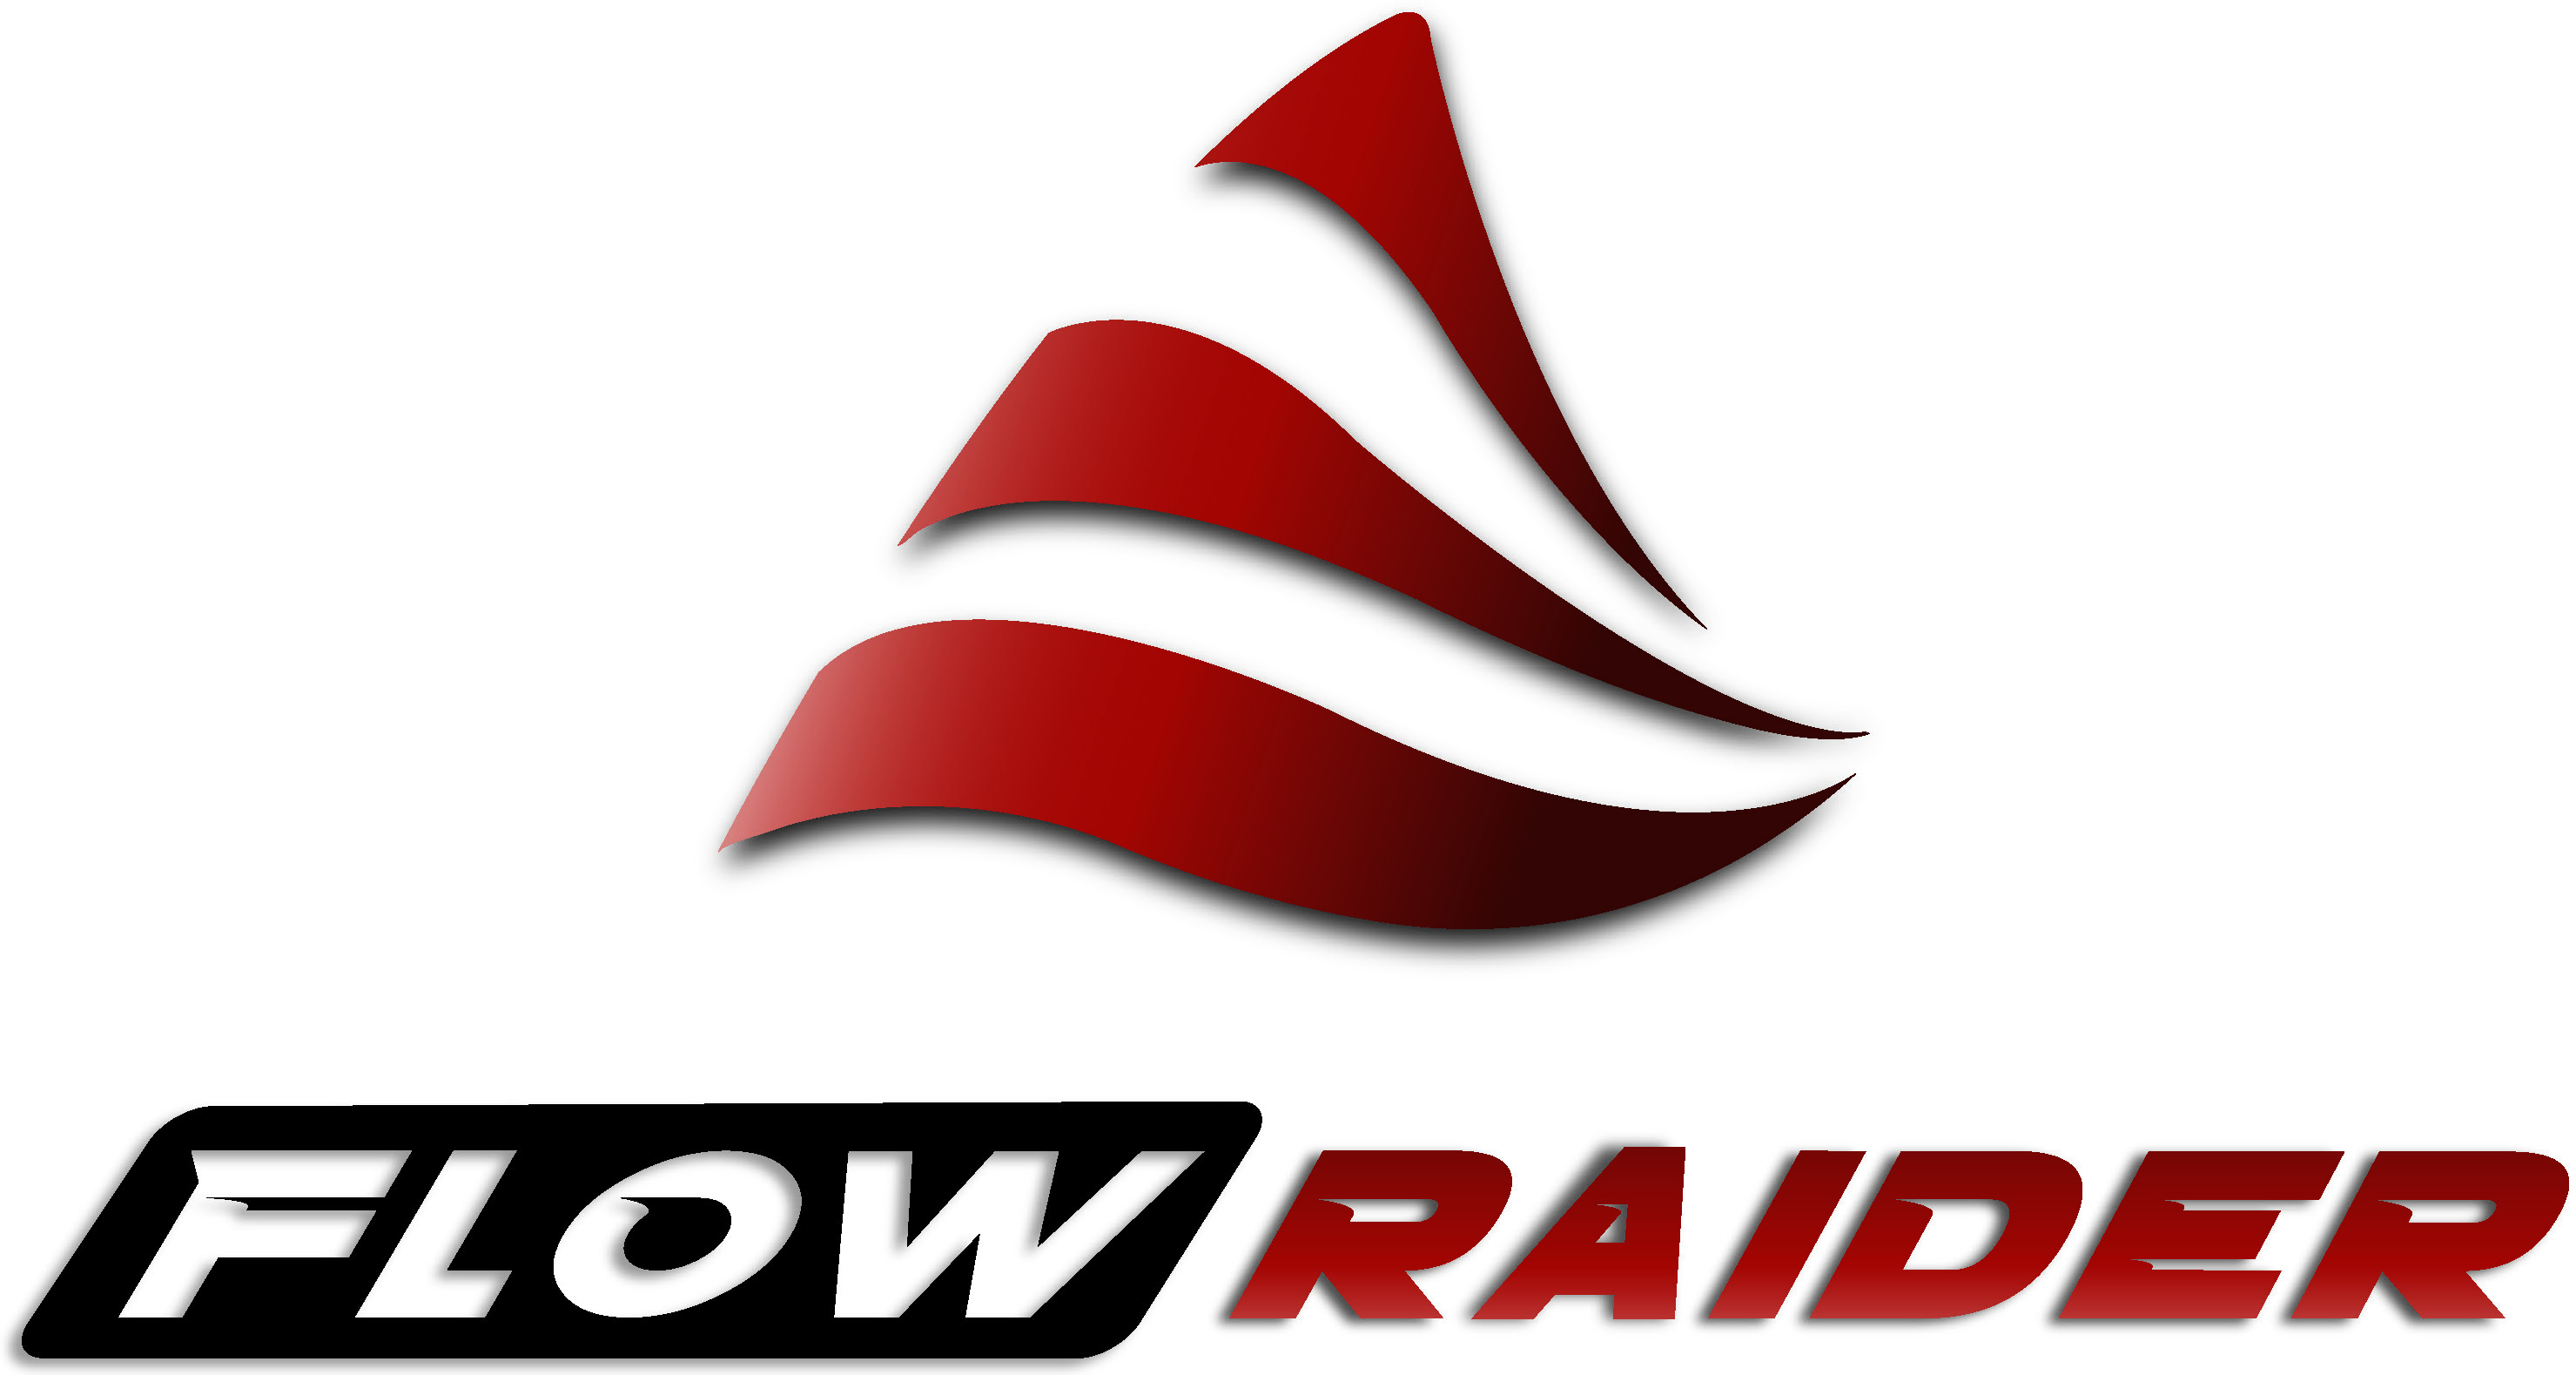 Flow Raider logo